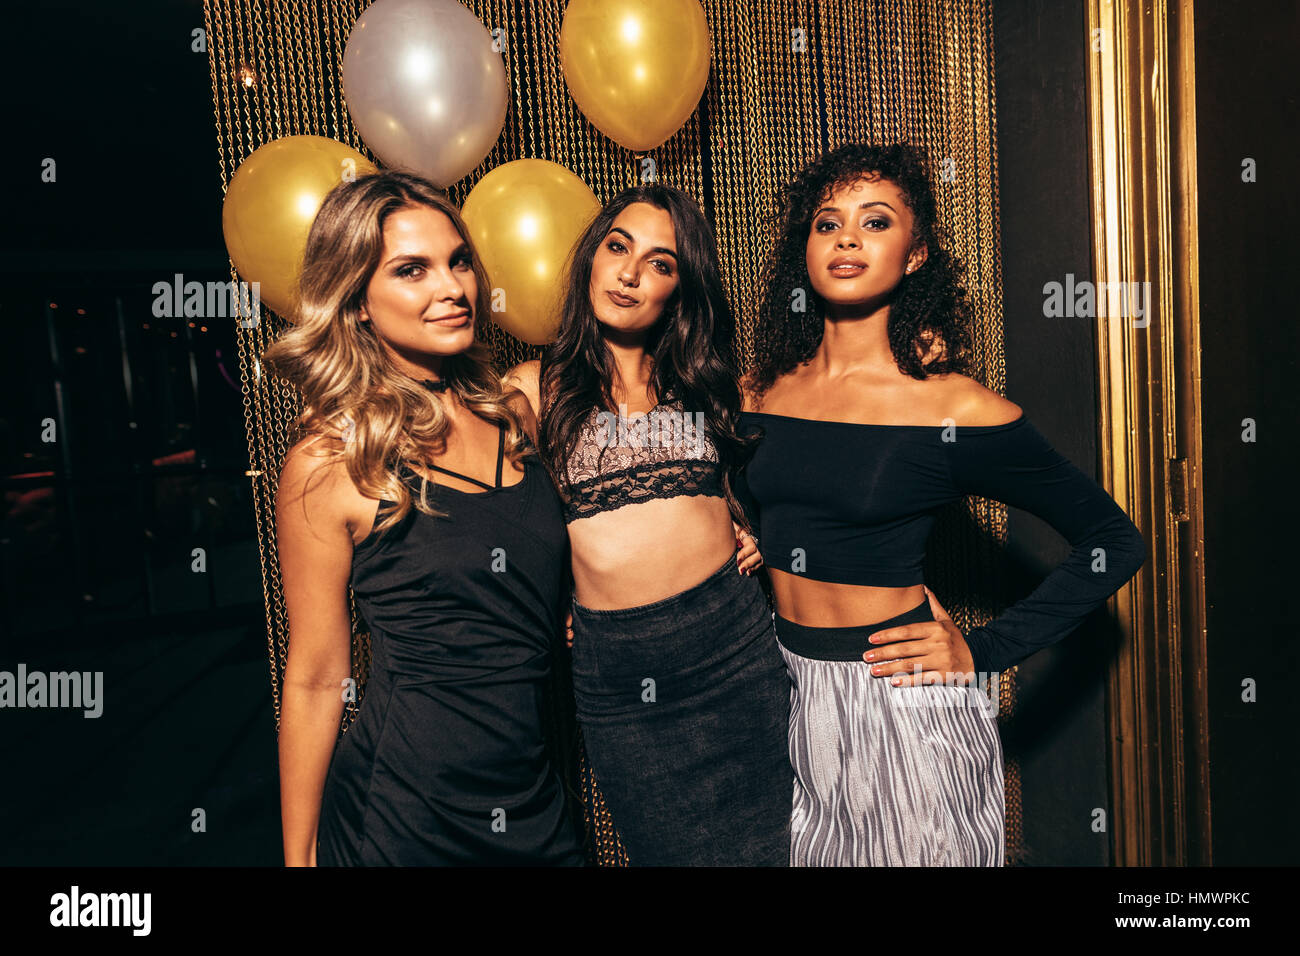 Portrait de trois jeunes filles élégantes à la discothèque. Groupe de femmes friends Standing together in party au pub. Banque D'Images